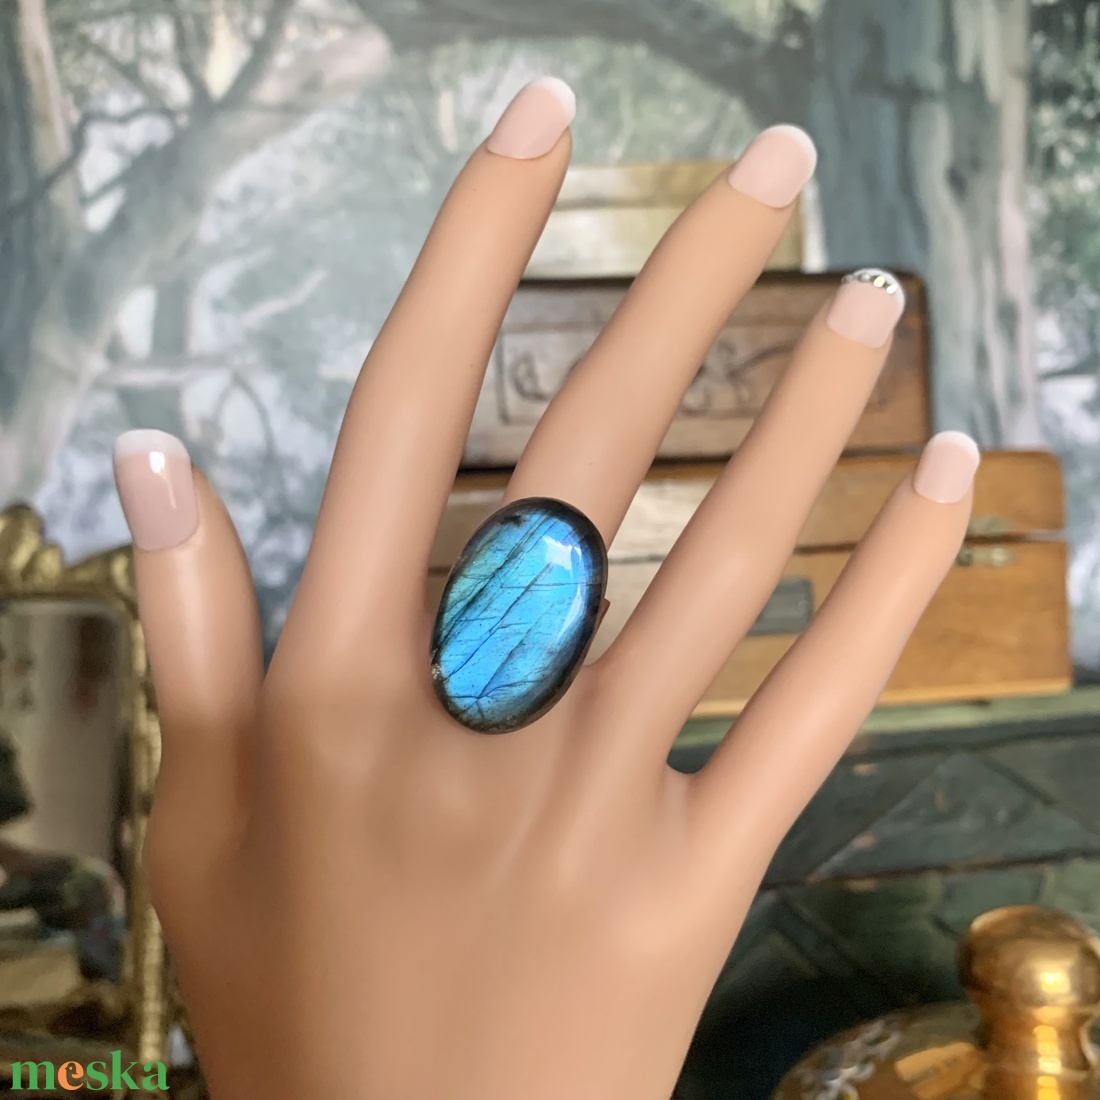 Csodálatos nagy kék labradorit köves állítható méretű 24 K aranyozott gyűrű, gyönyörűséges drágakő gyűrű fénylő kővel - ékszer - gyűrű - statement gyűrű - Meska.hu